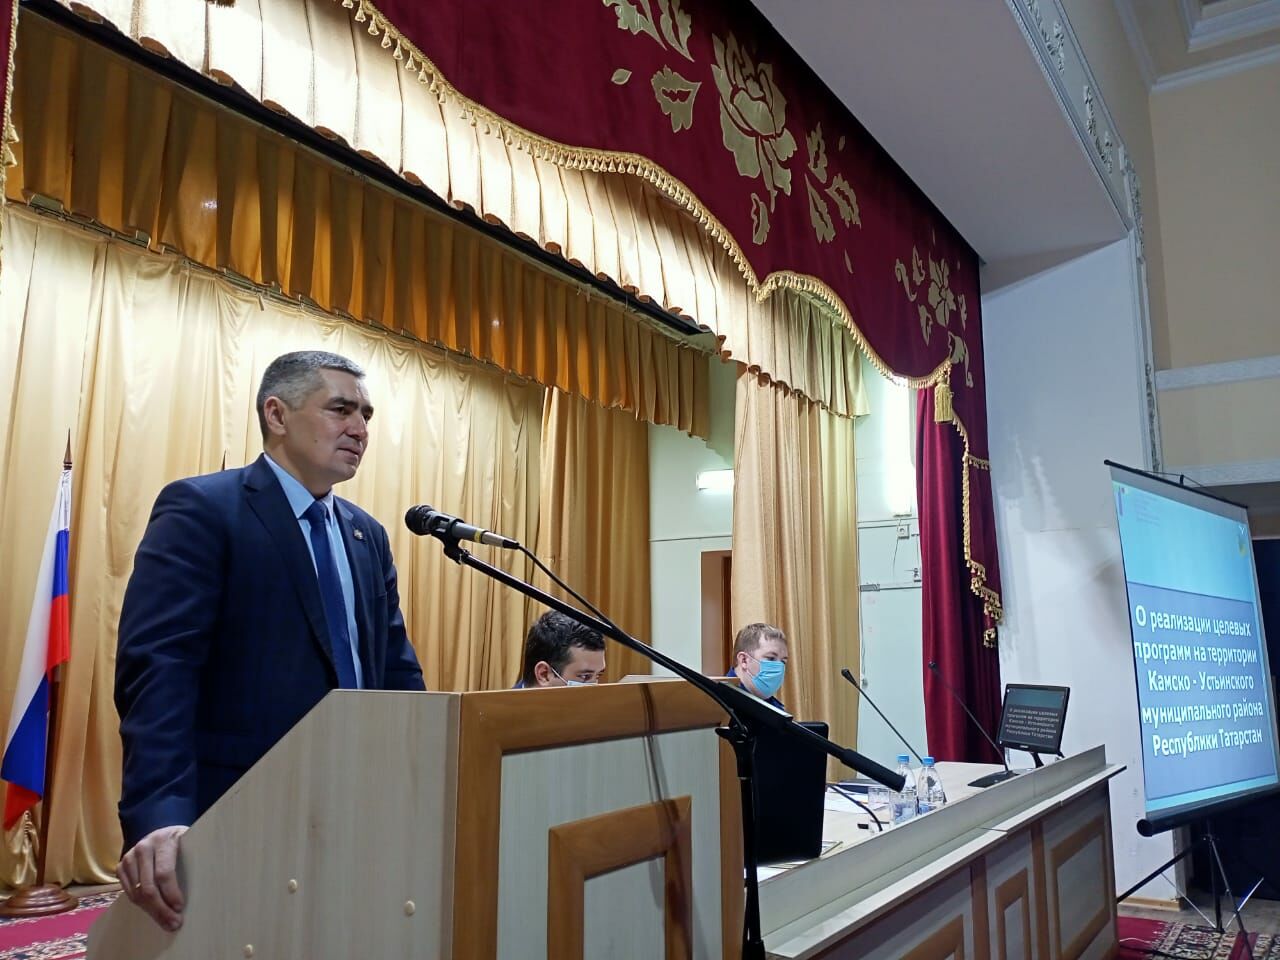 Итоги, планы и проблемные вопросы обсудили в Камском Устье